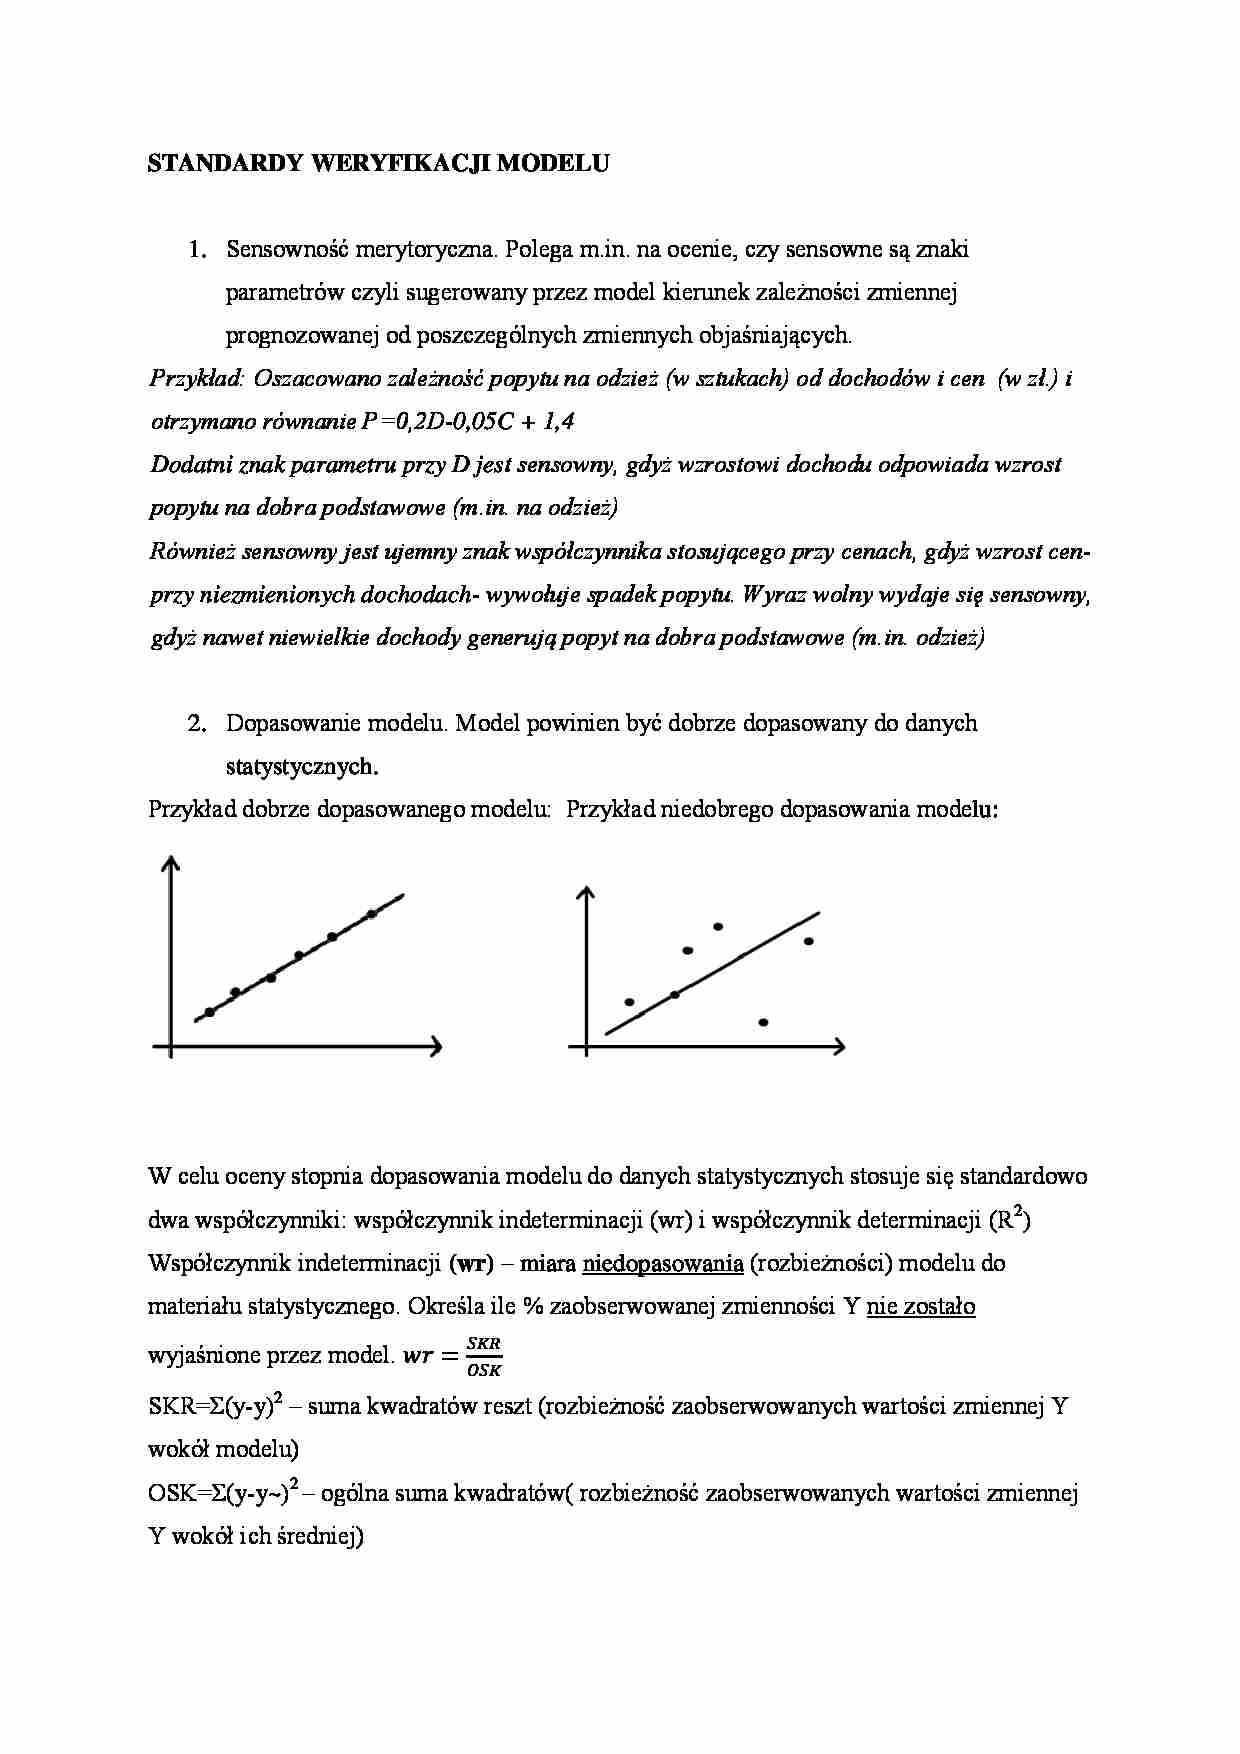 Standardy weryfikacji modelu - wykład - strona 1